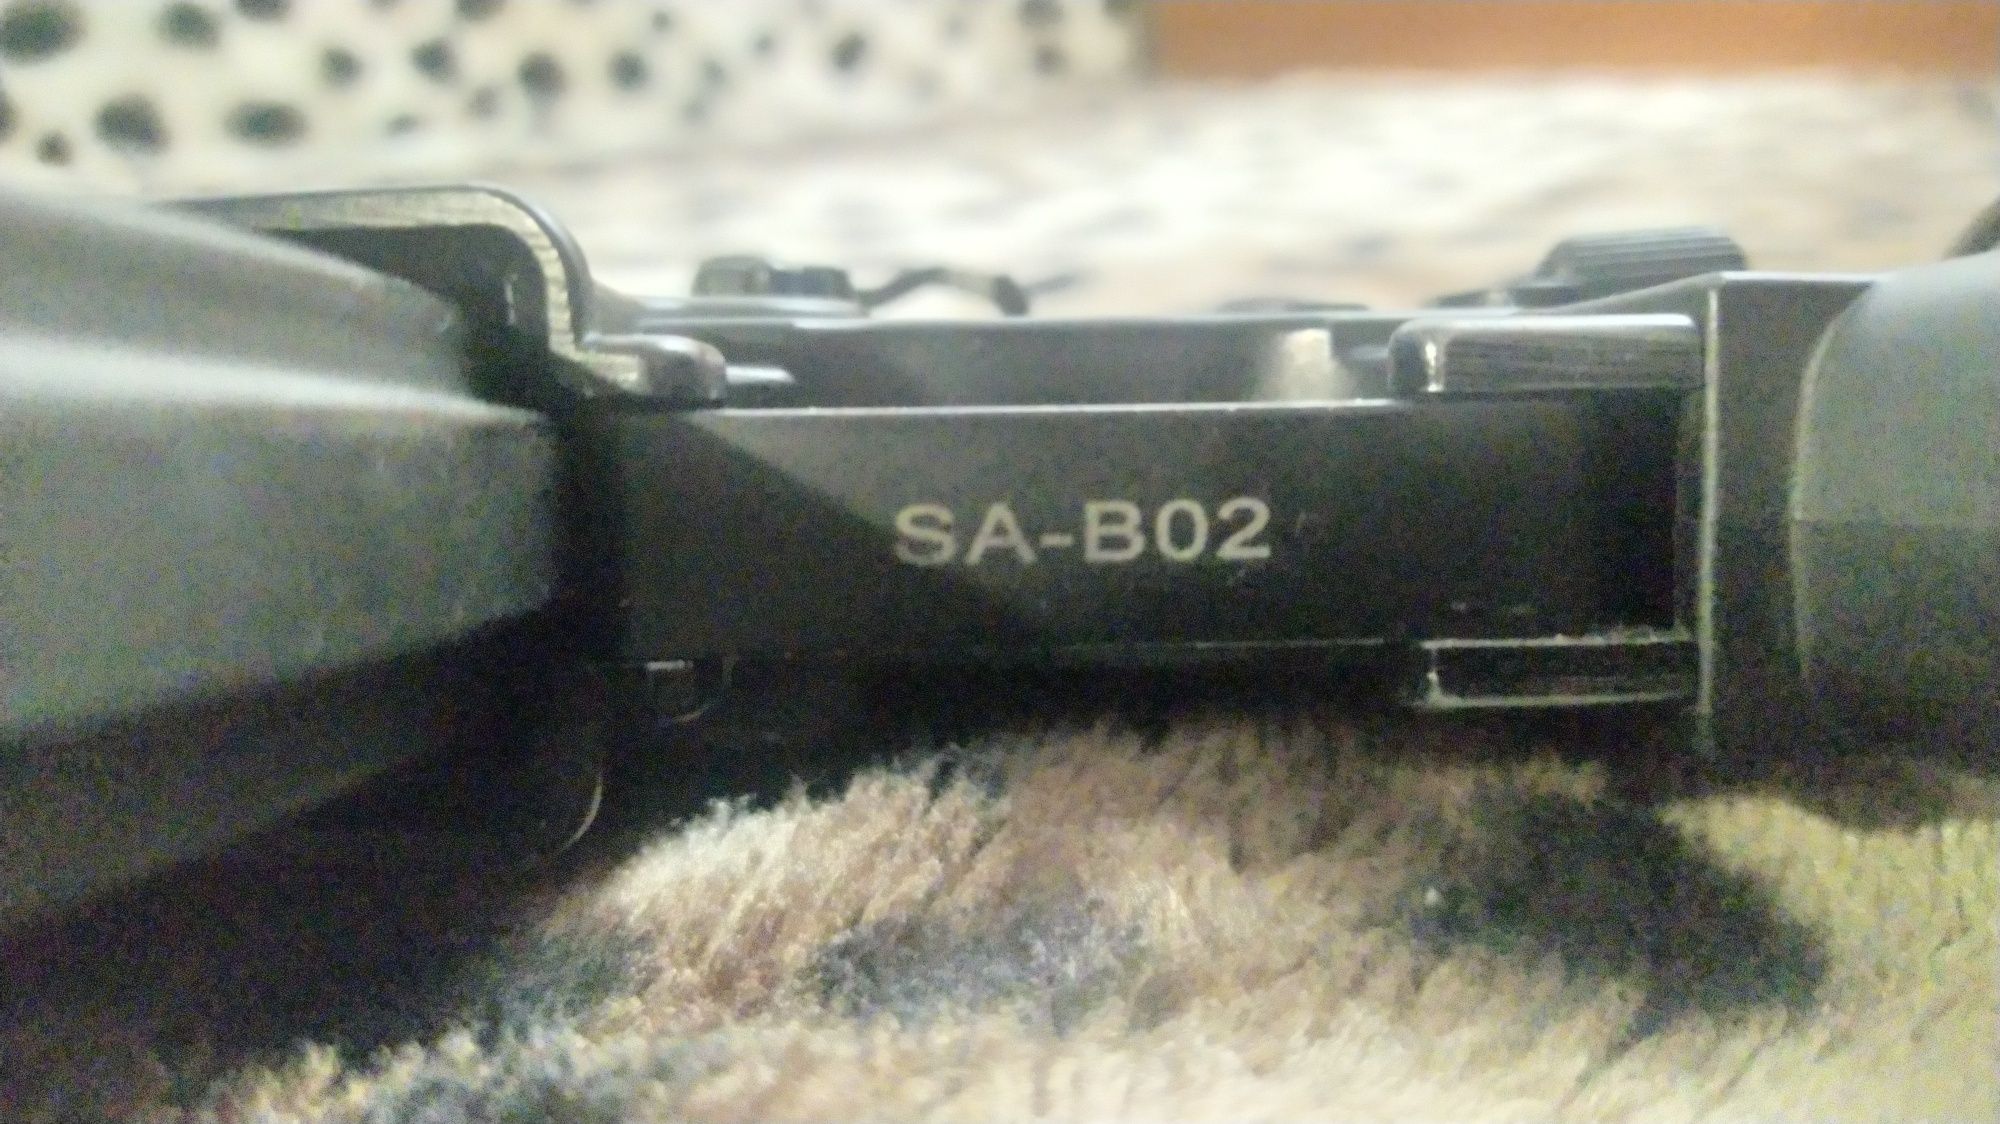 M4 Specna Arms SA-BO2